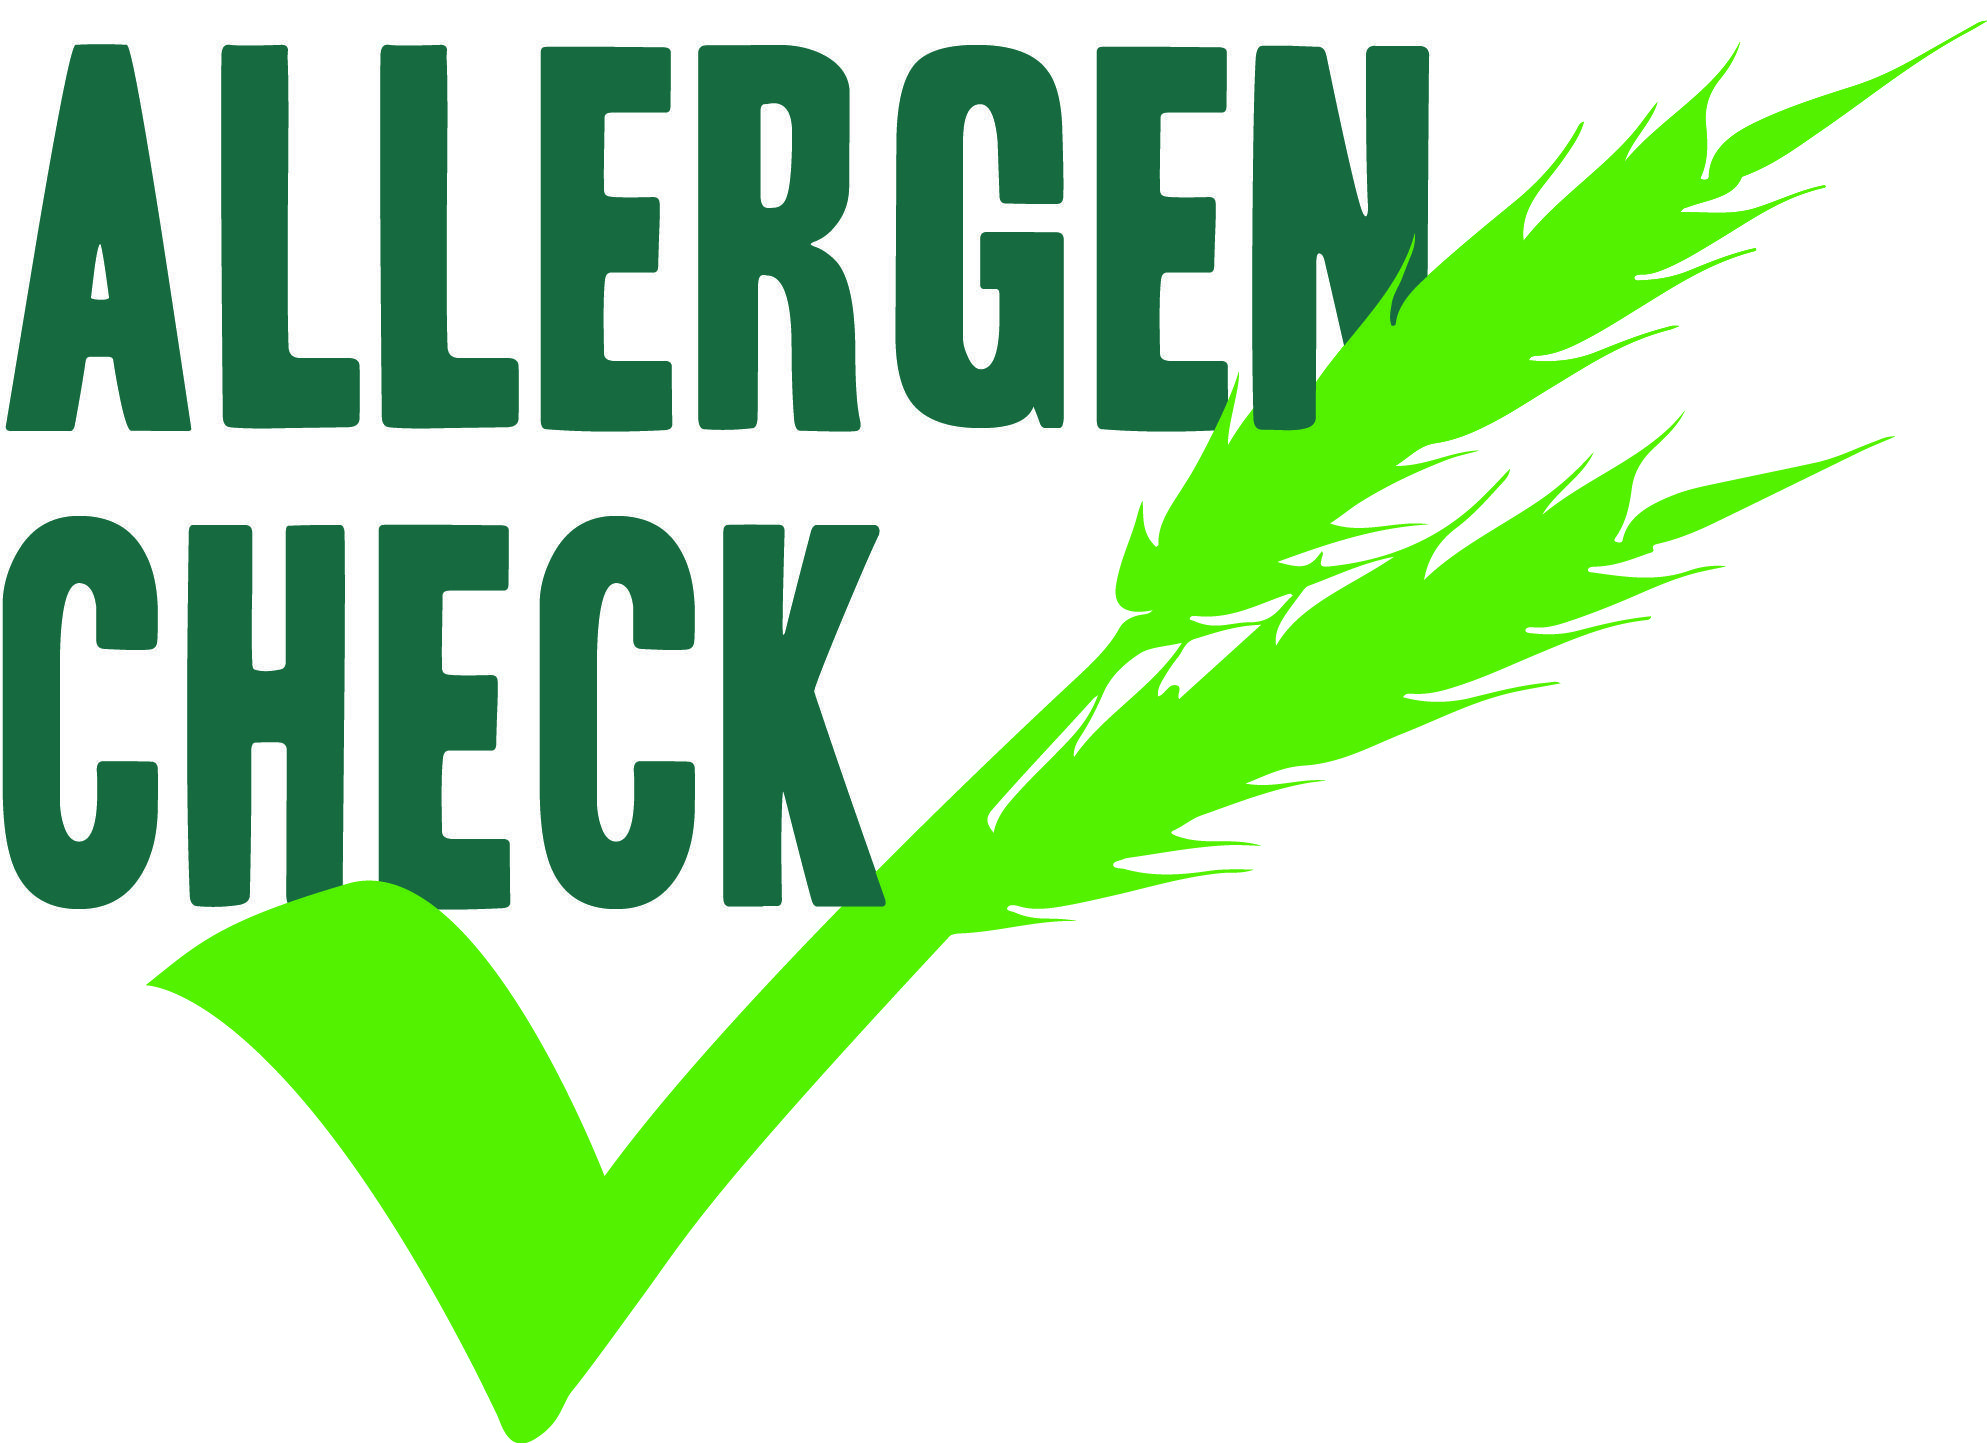 Allergen Logo - Thomas Ridley Foodservice launch “Allergen Check” - BFFF